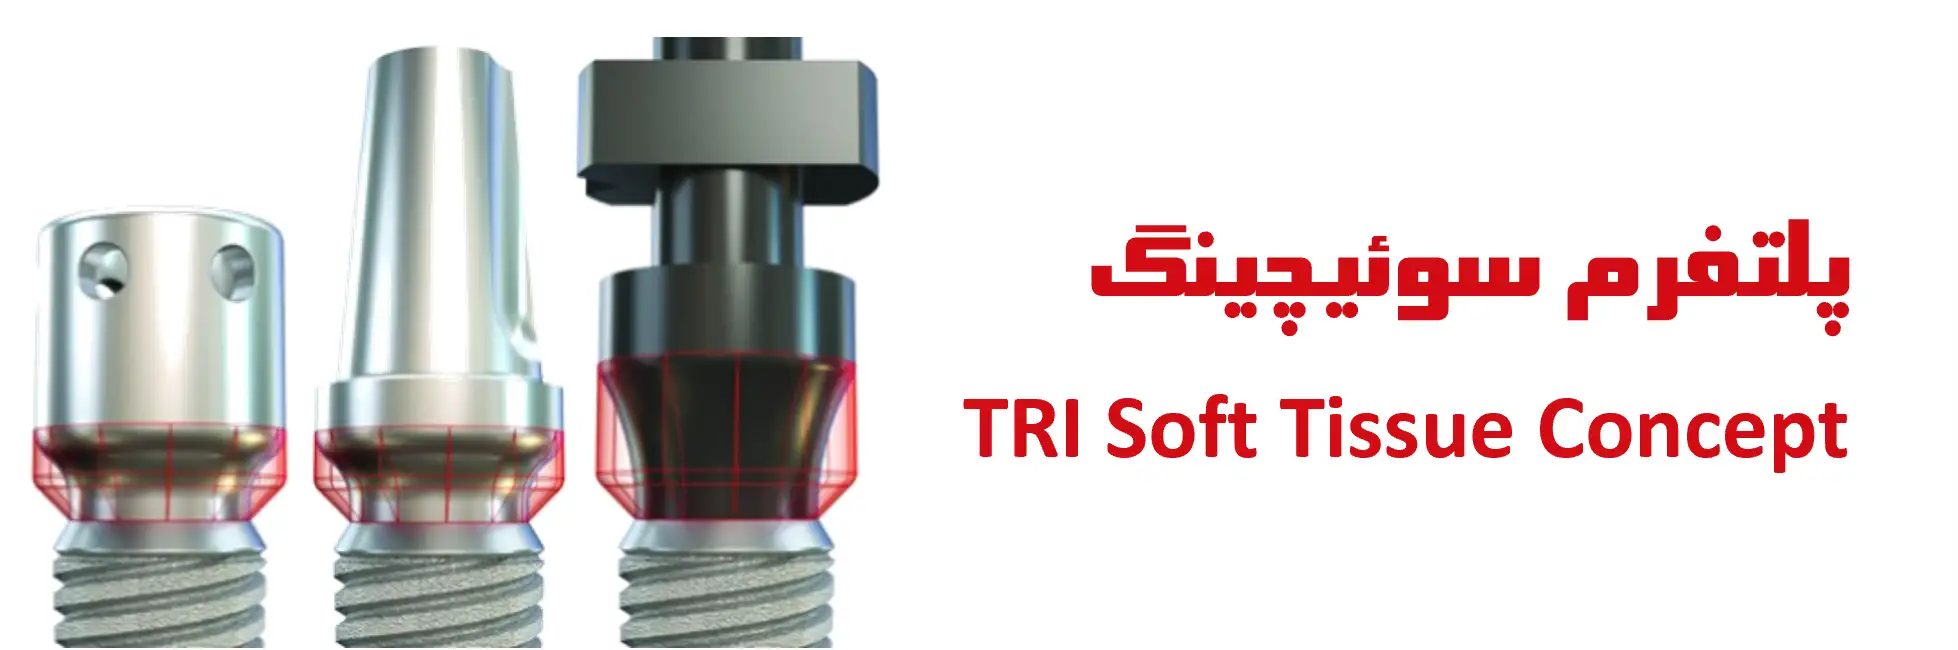 پلتفرم سوئیچینگ (TRI Soft Tissue Concept)